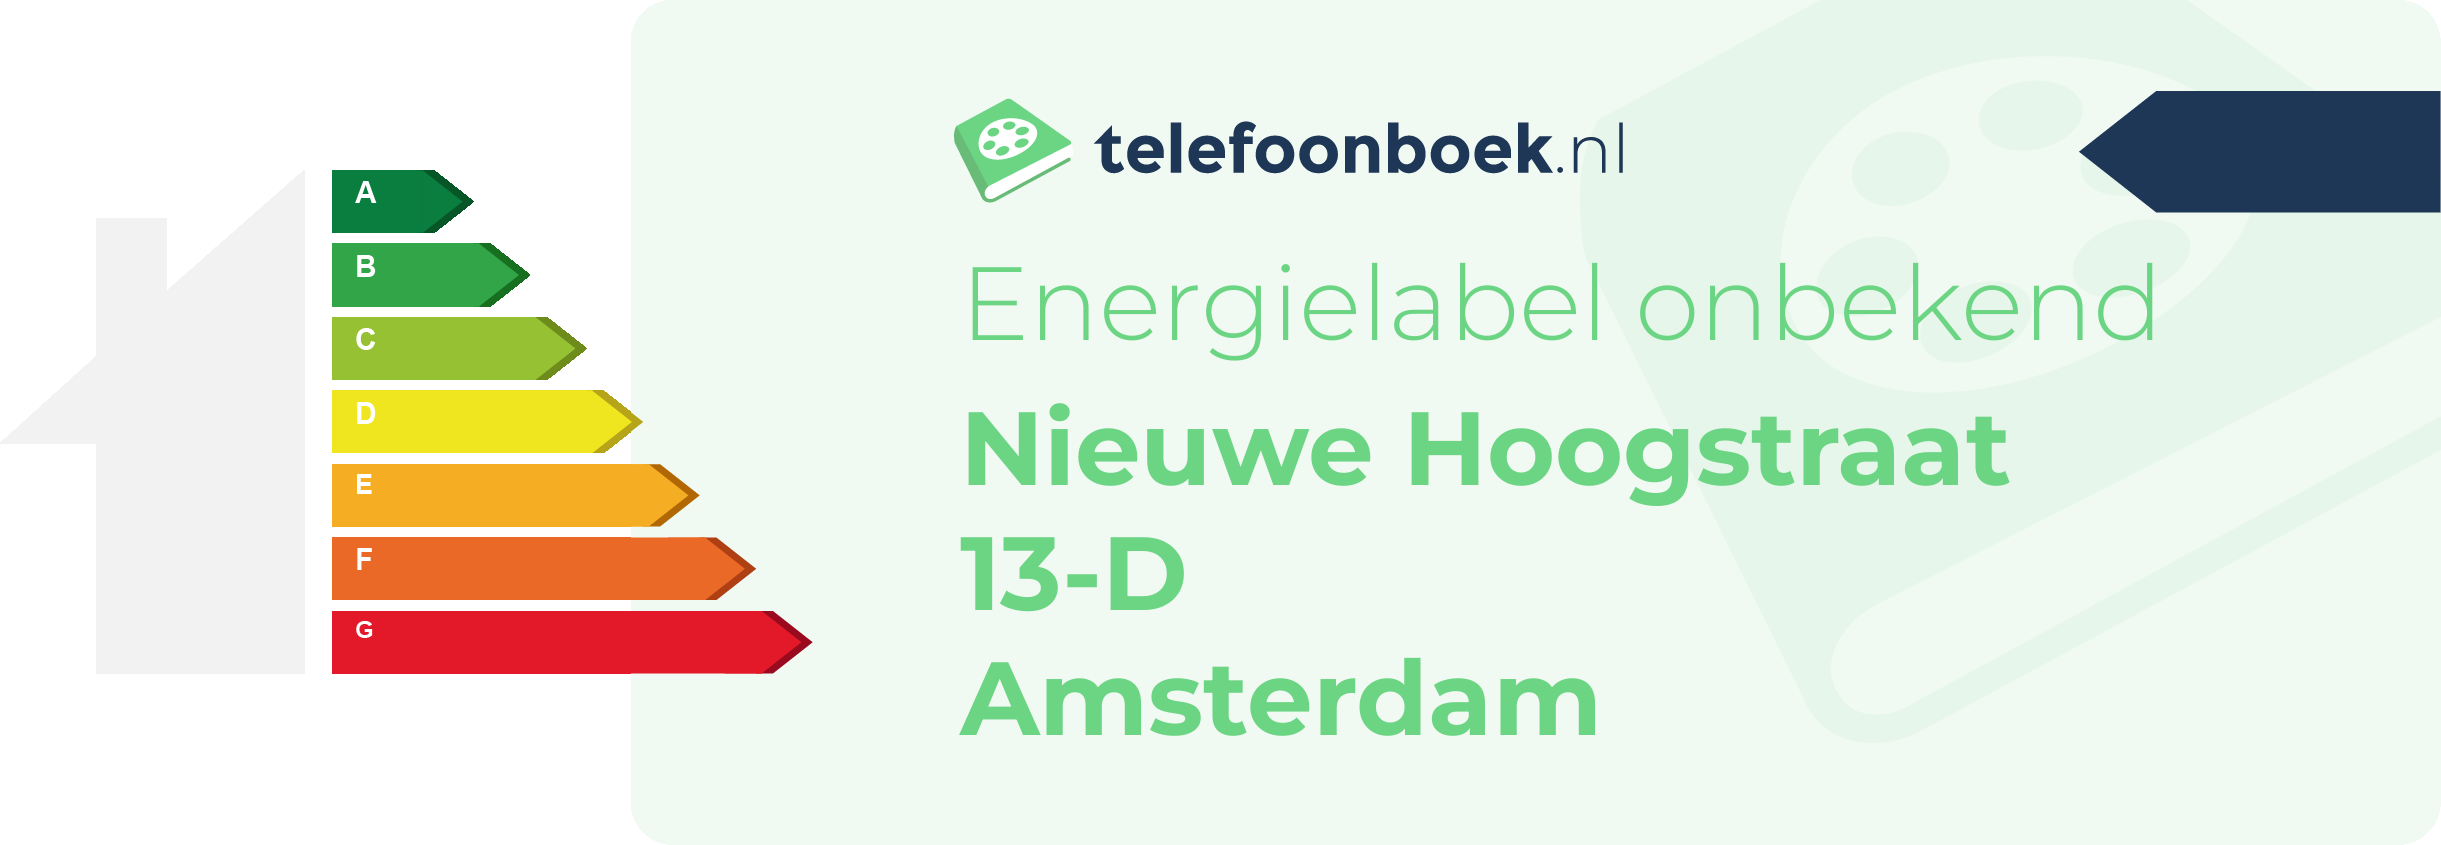 Energielabel Nieuwe Hoogstraat 13-D Amsterdam